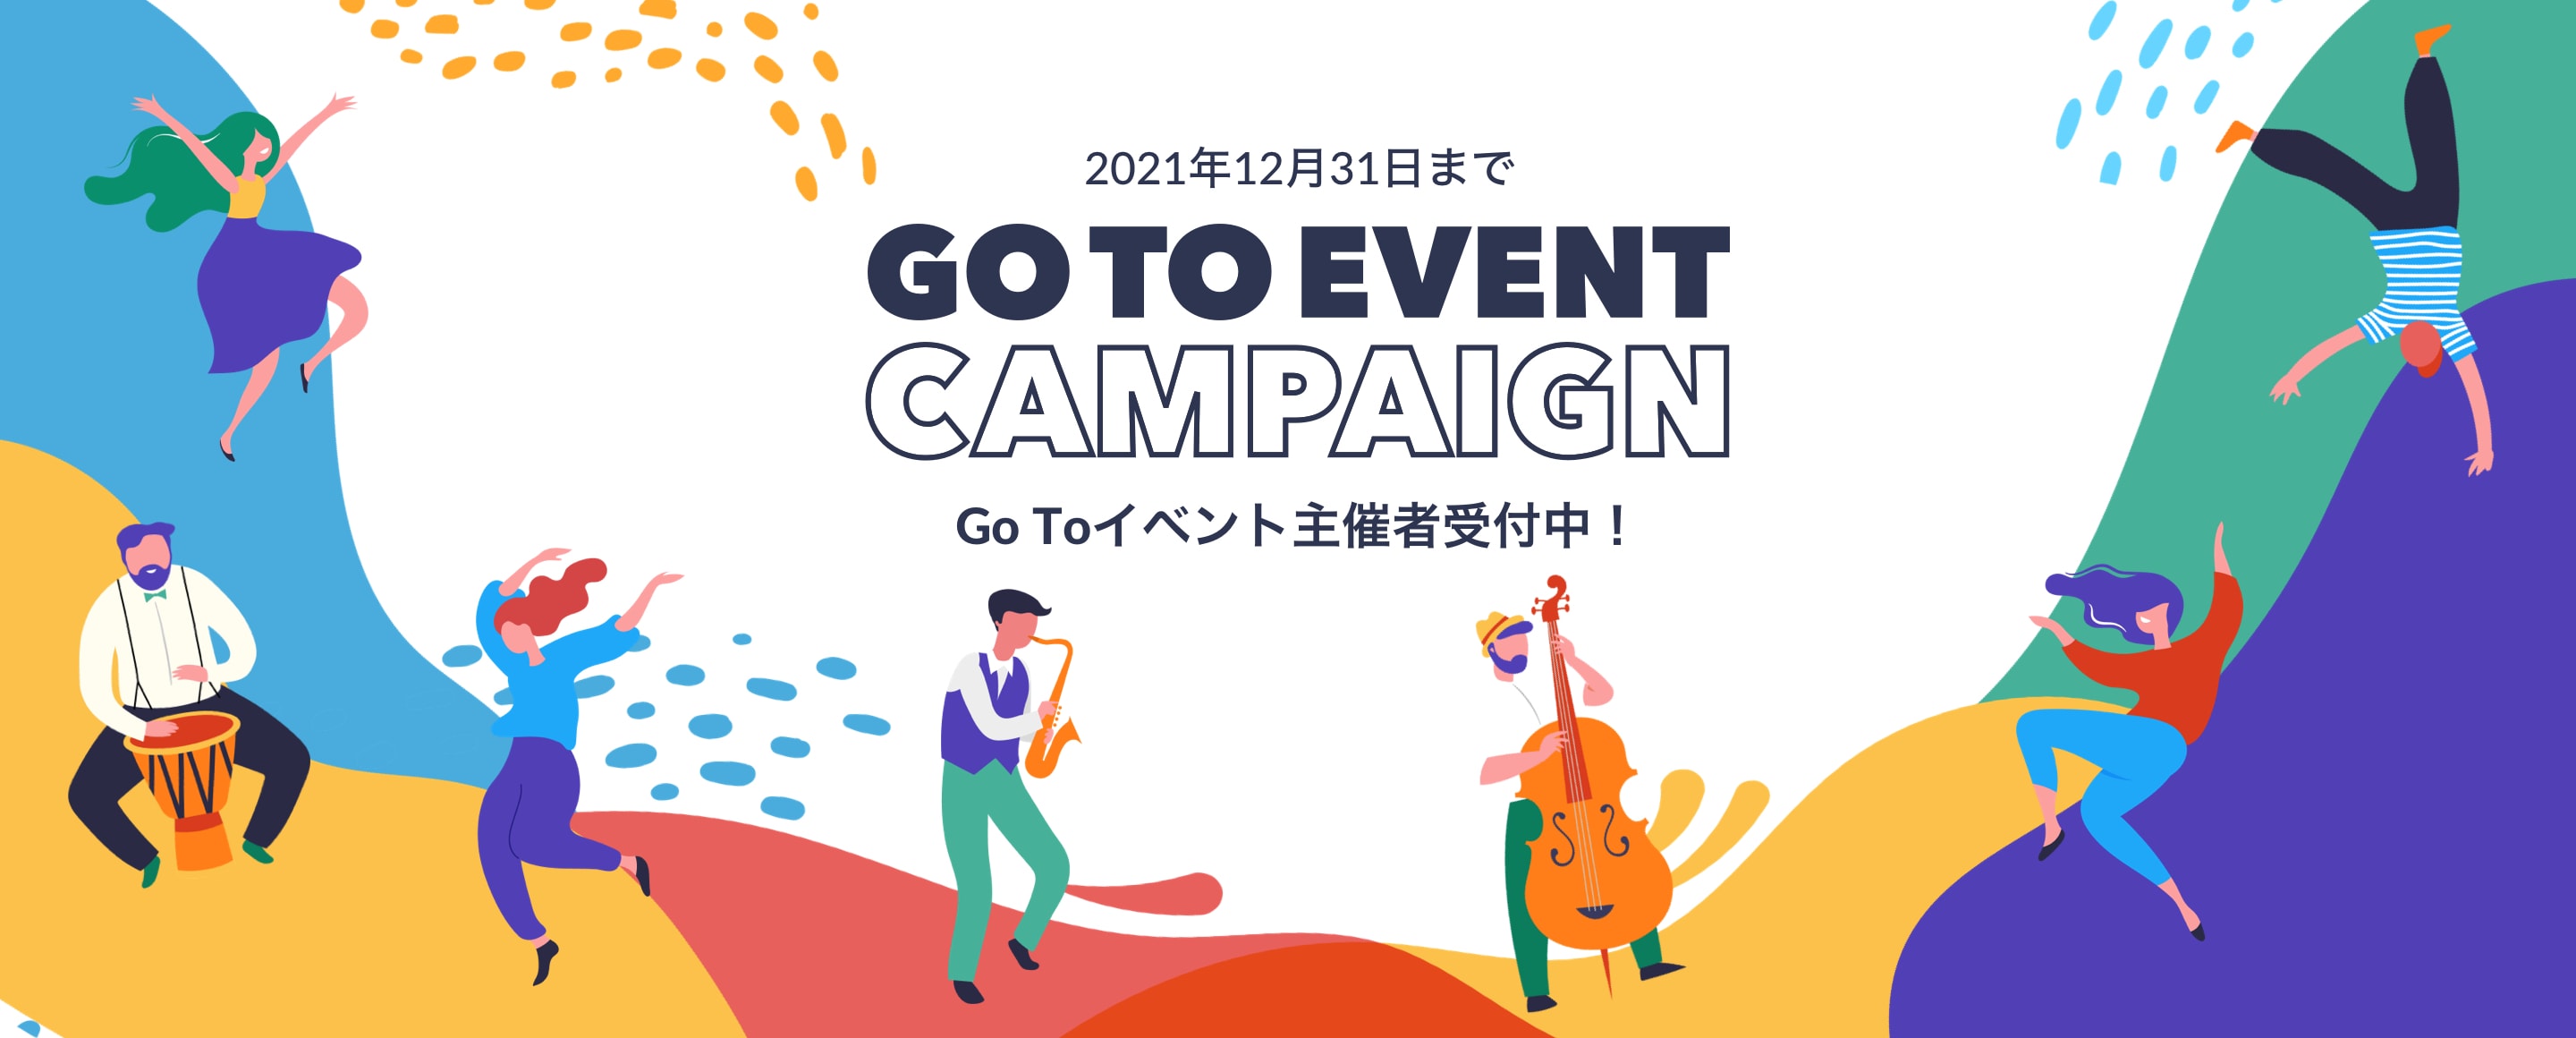 2021年12月31日までGOTOイベントキャンペーン Go Toイベント主催者受付中！